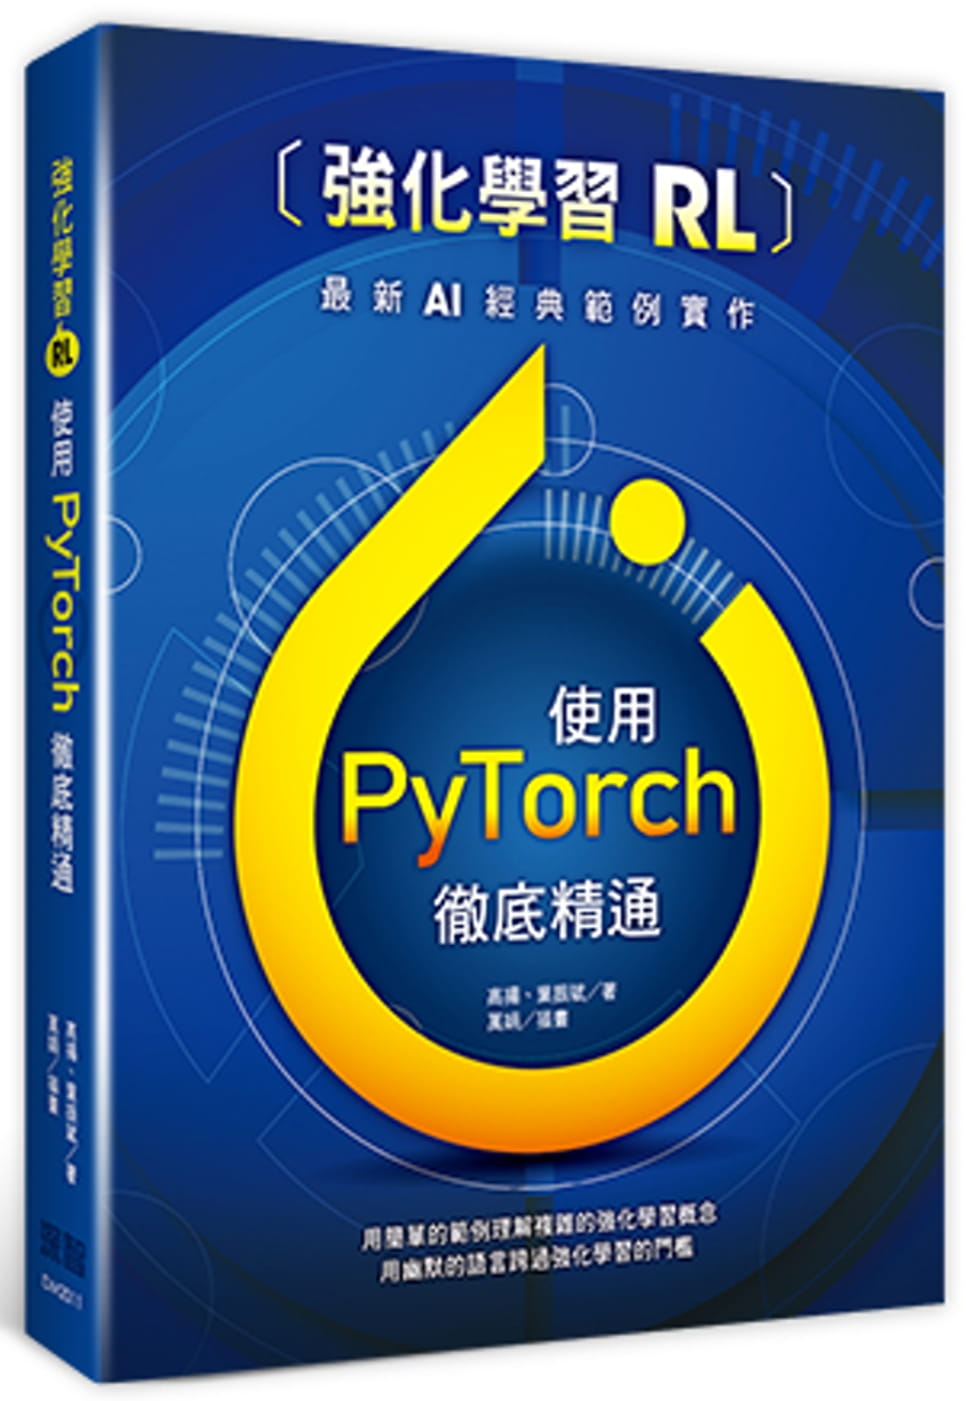 強化學習(RL)：使用PyTorch徹底精通